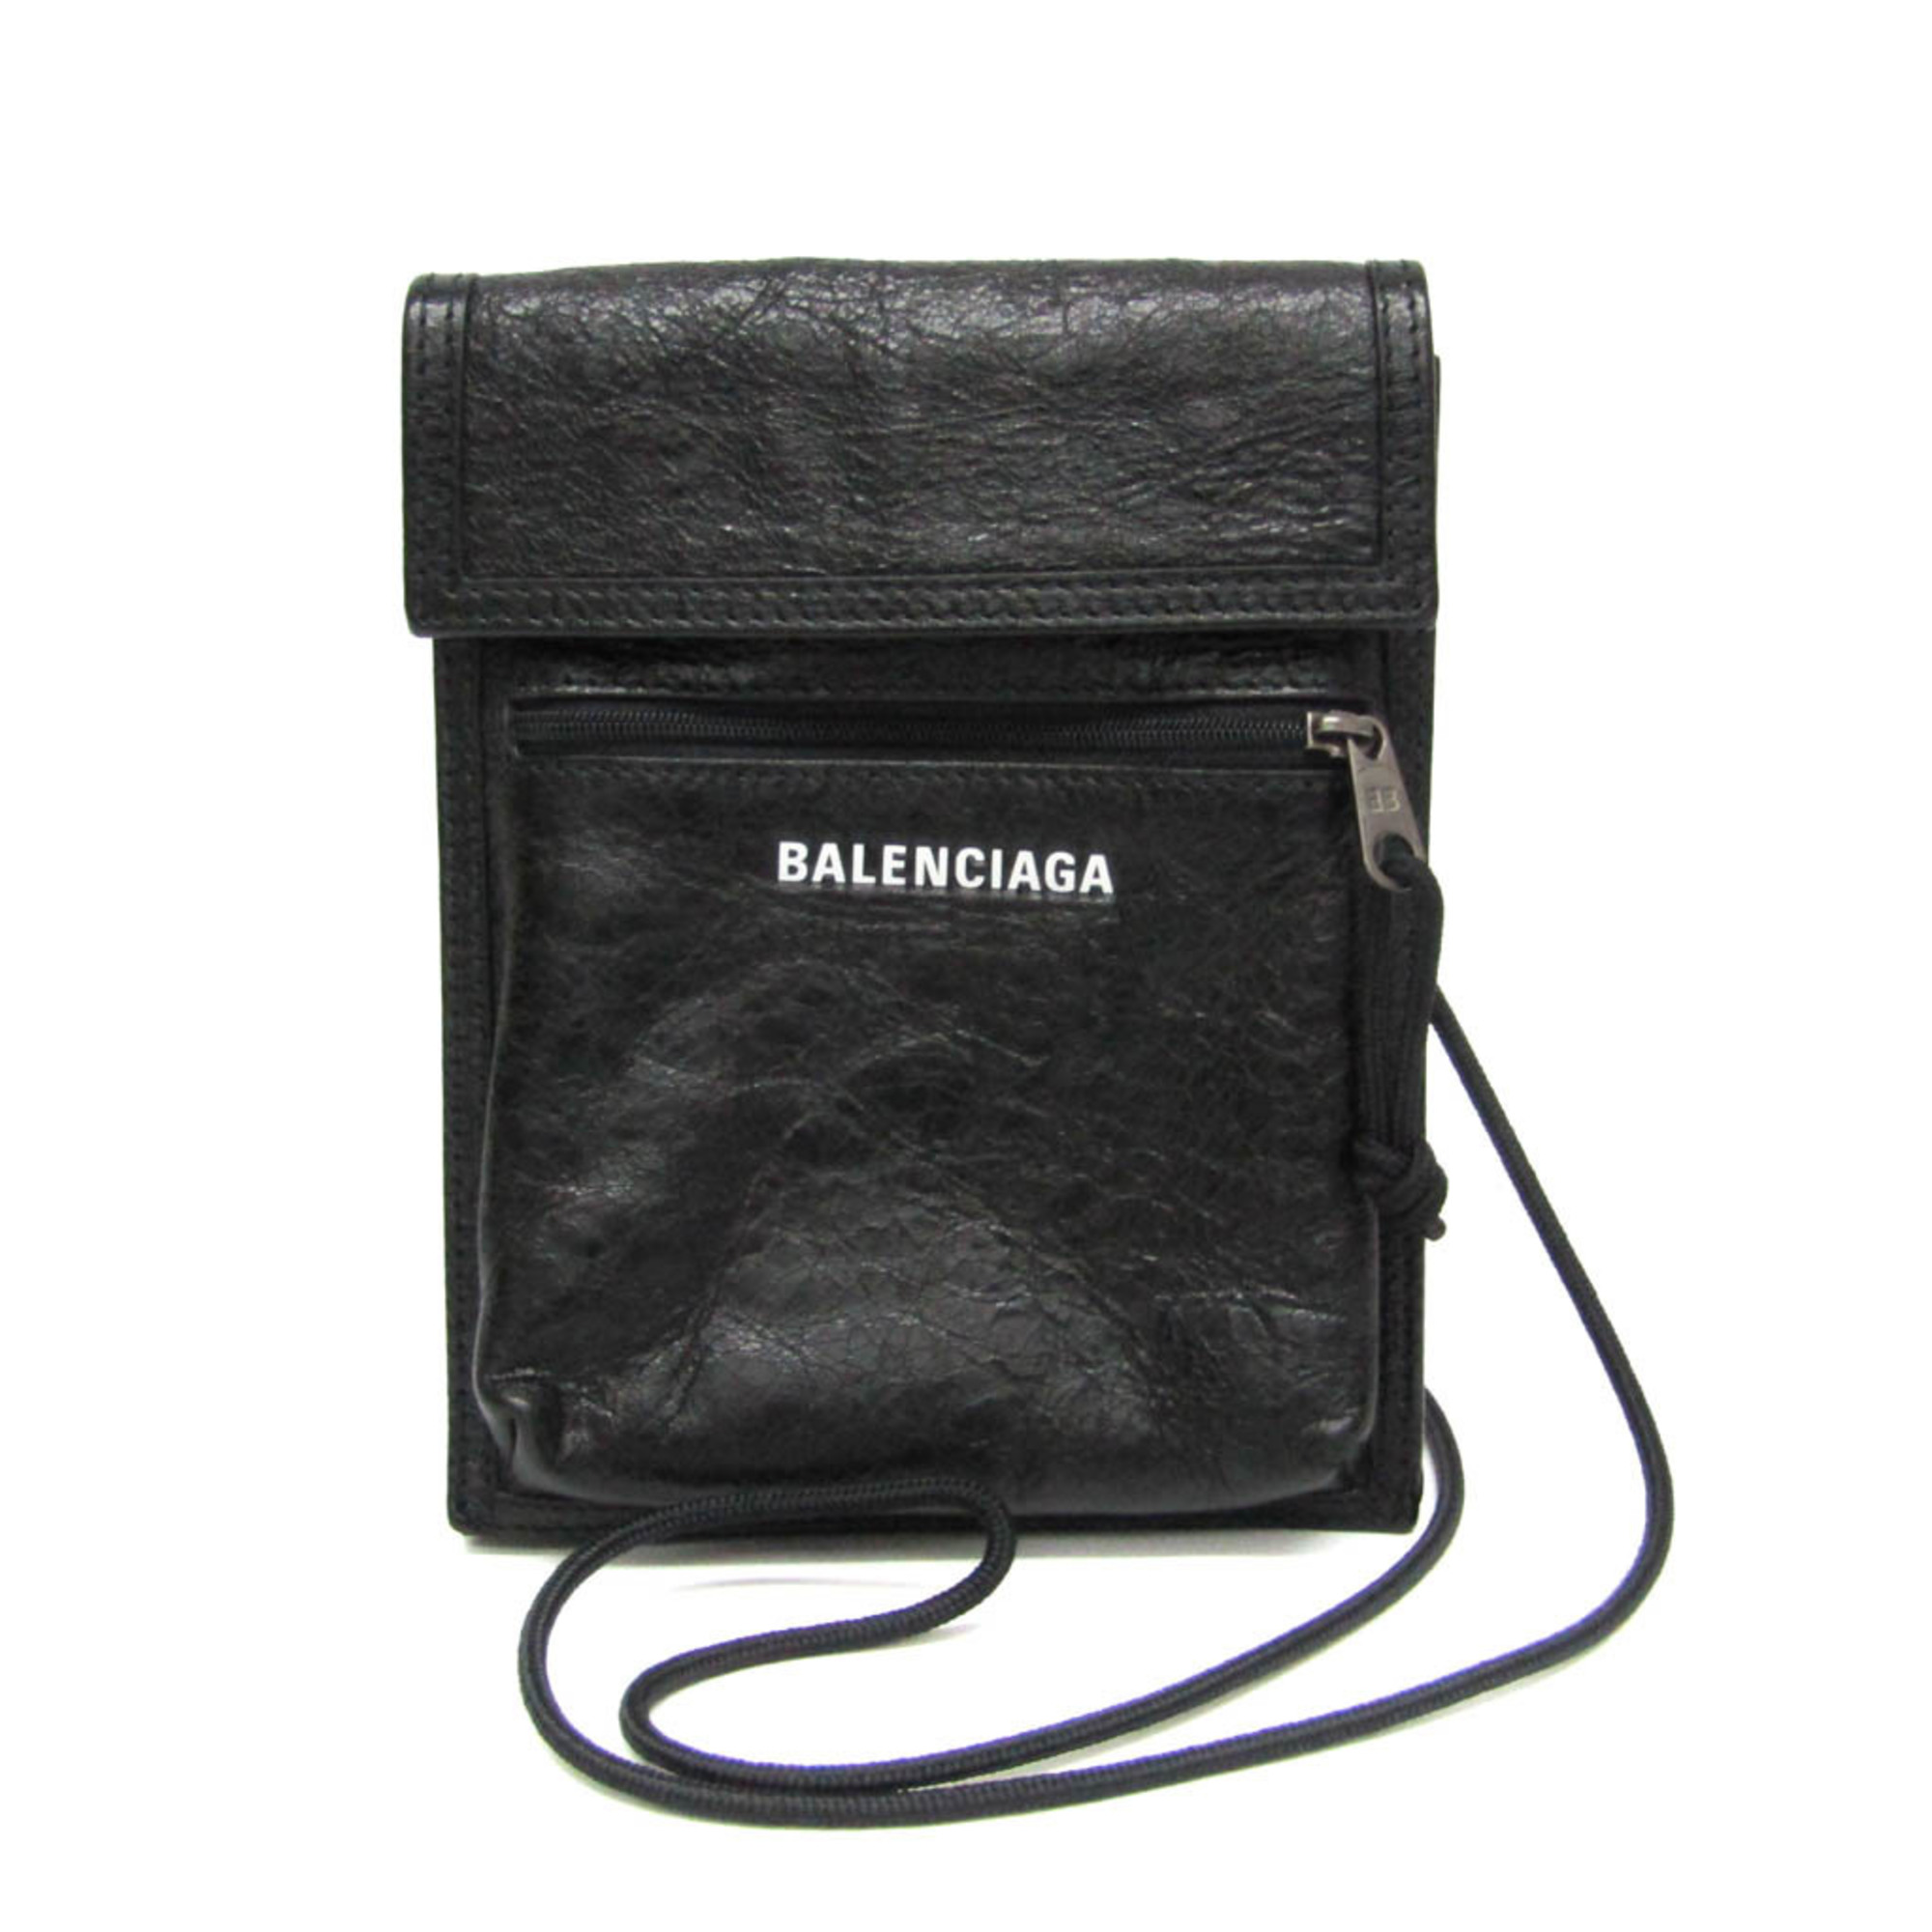 バレンシアガ(Balenciaga) EXPLORER POUCH 532298 レディース,メンズ レザー,キャンバス ショルダーバッグ ブラック